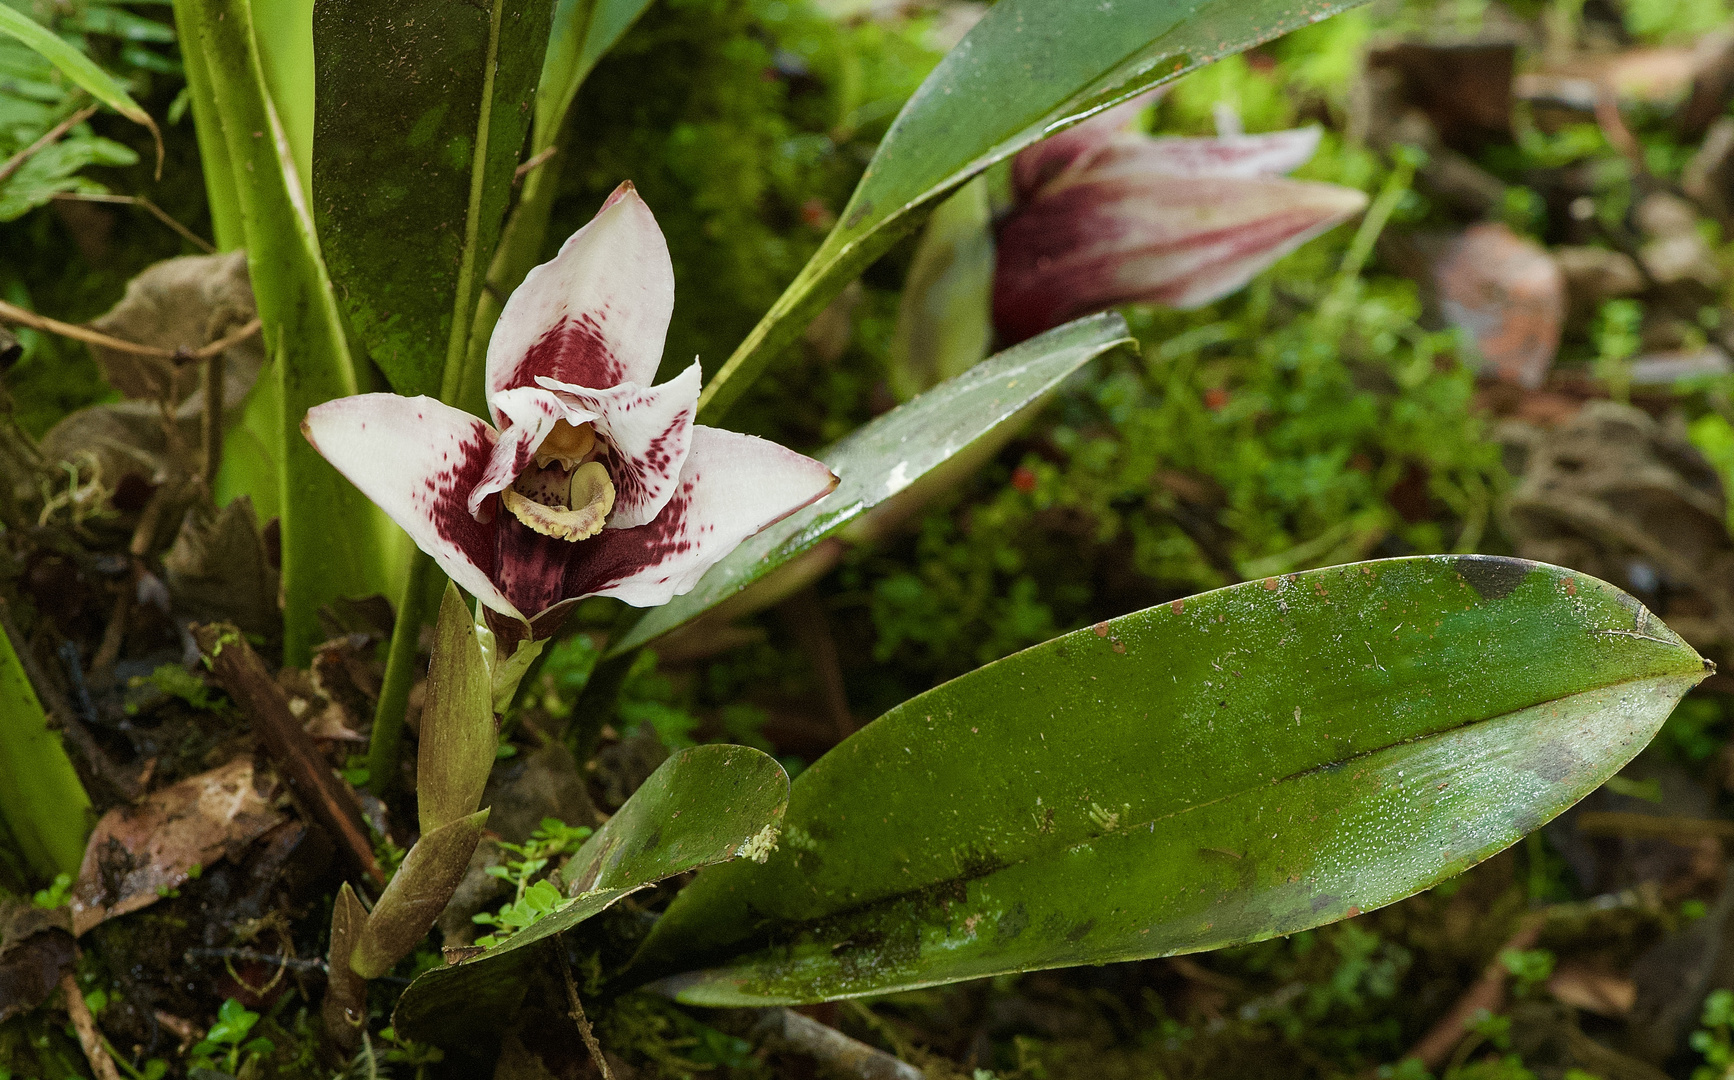 Wildlebende Orchidee aus dem Nebelwald von Peru